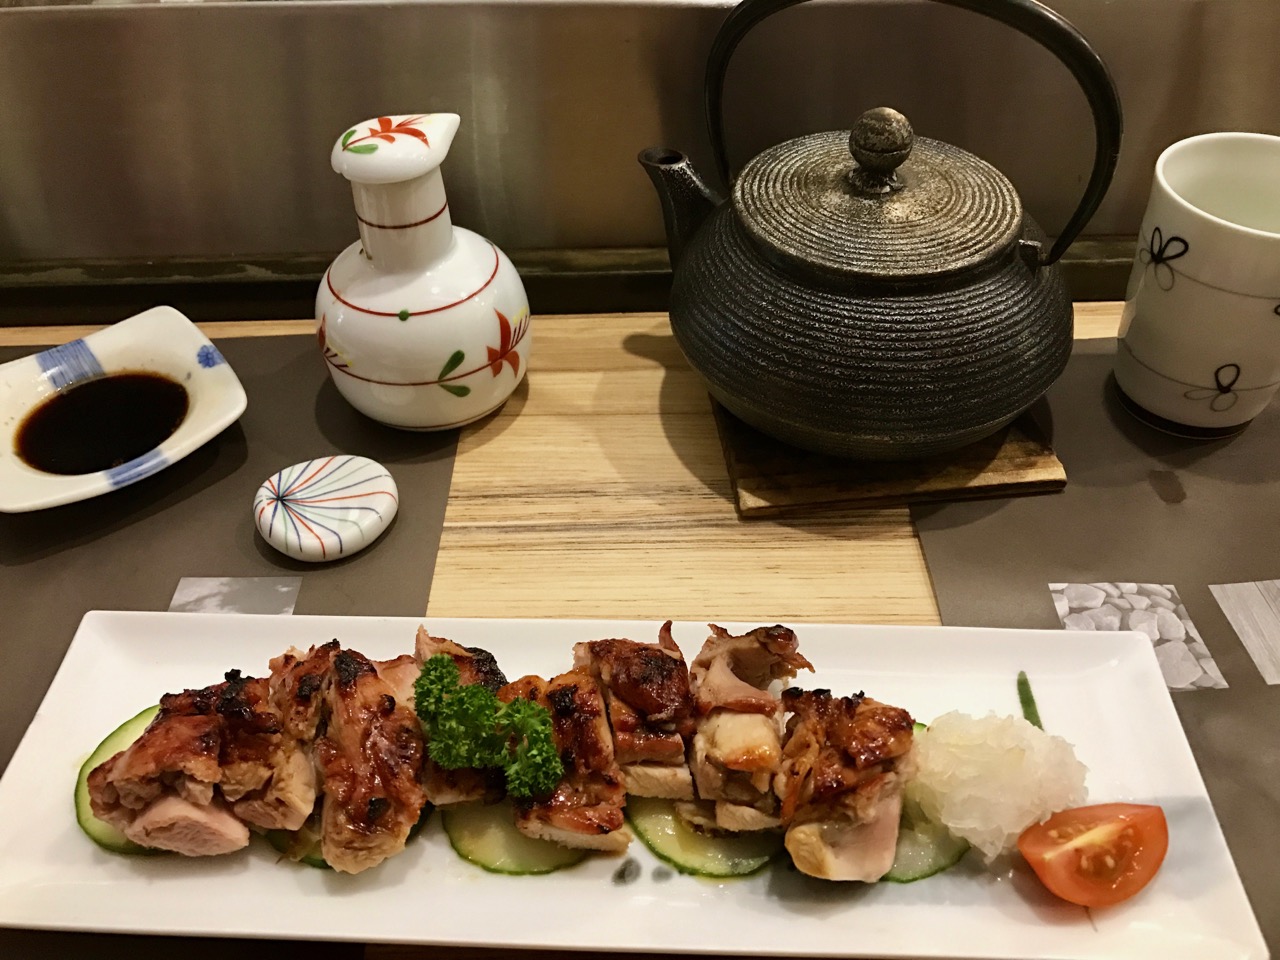 Restaurant Japonais Nonbe Daigaku - Cuisse de poulet "Patte noire" grillé à la sauce teriyaki